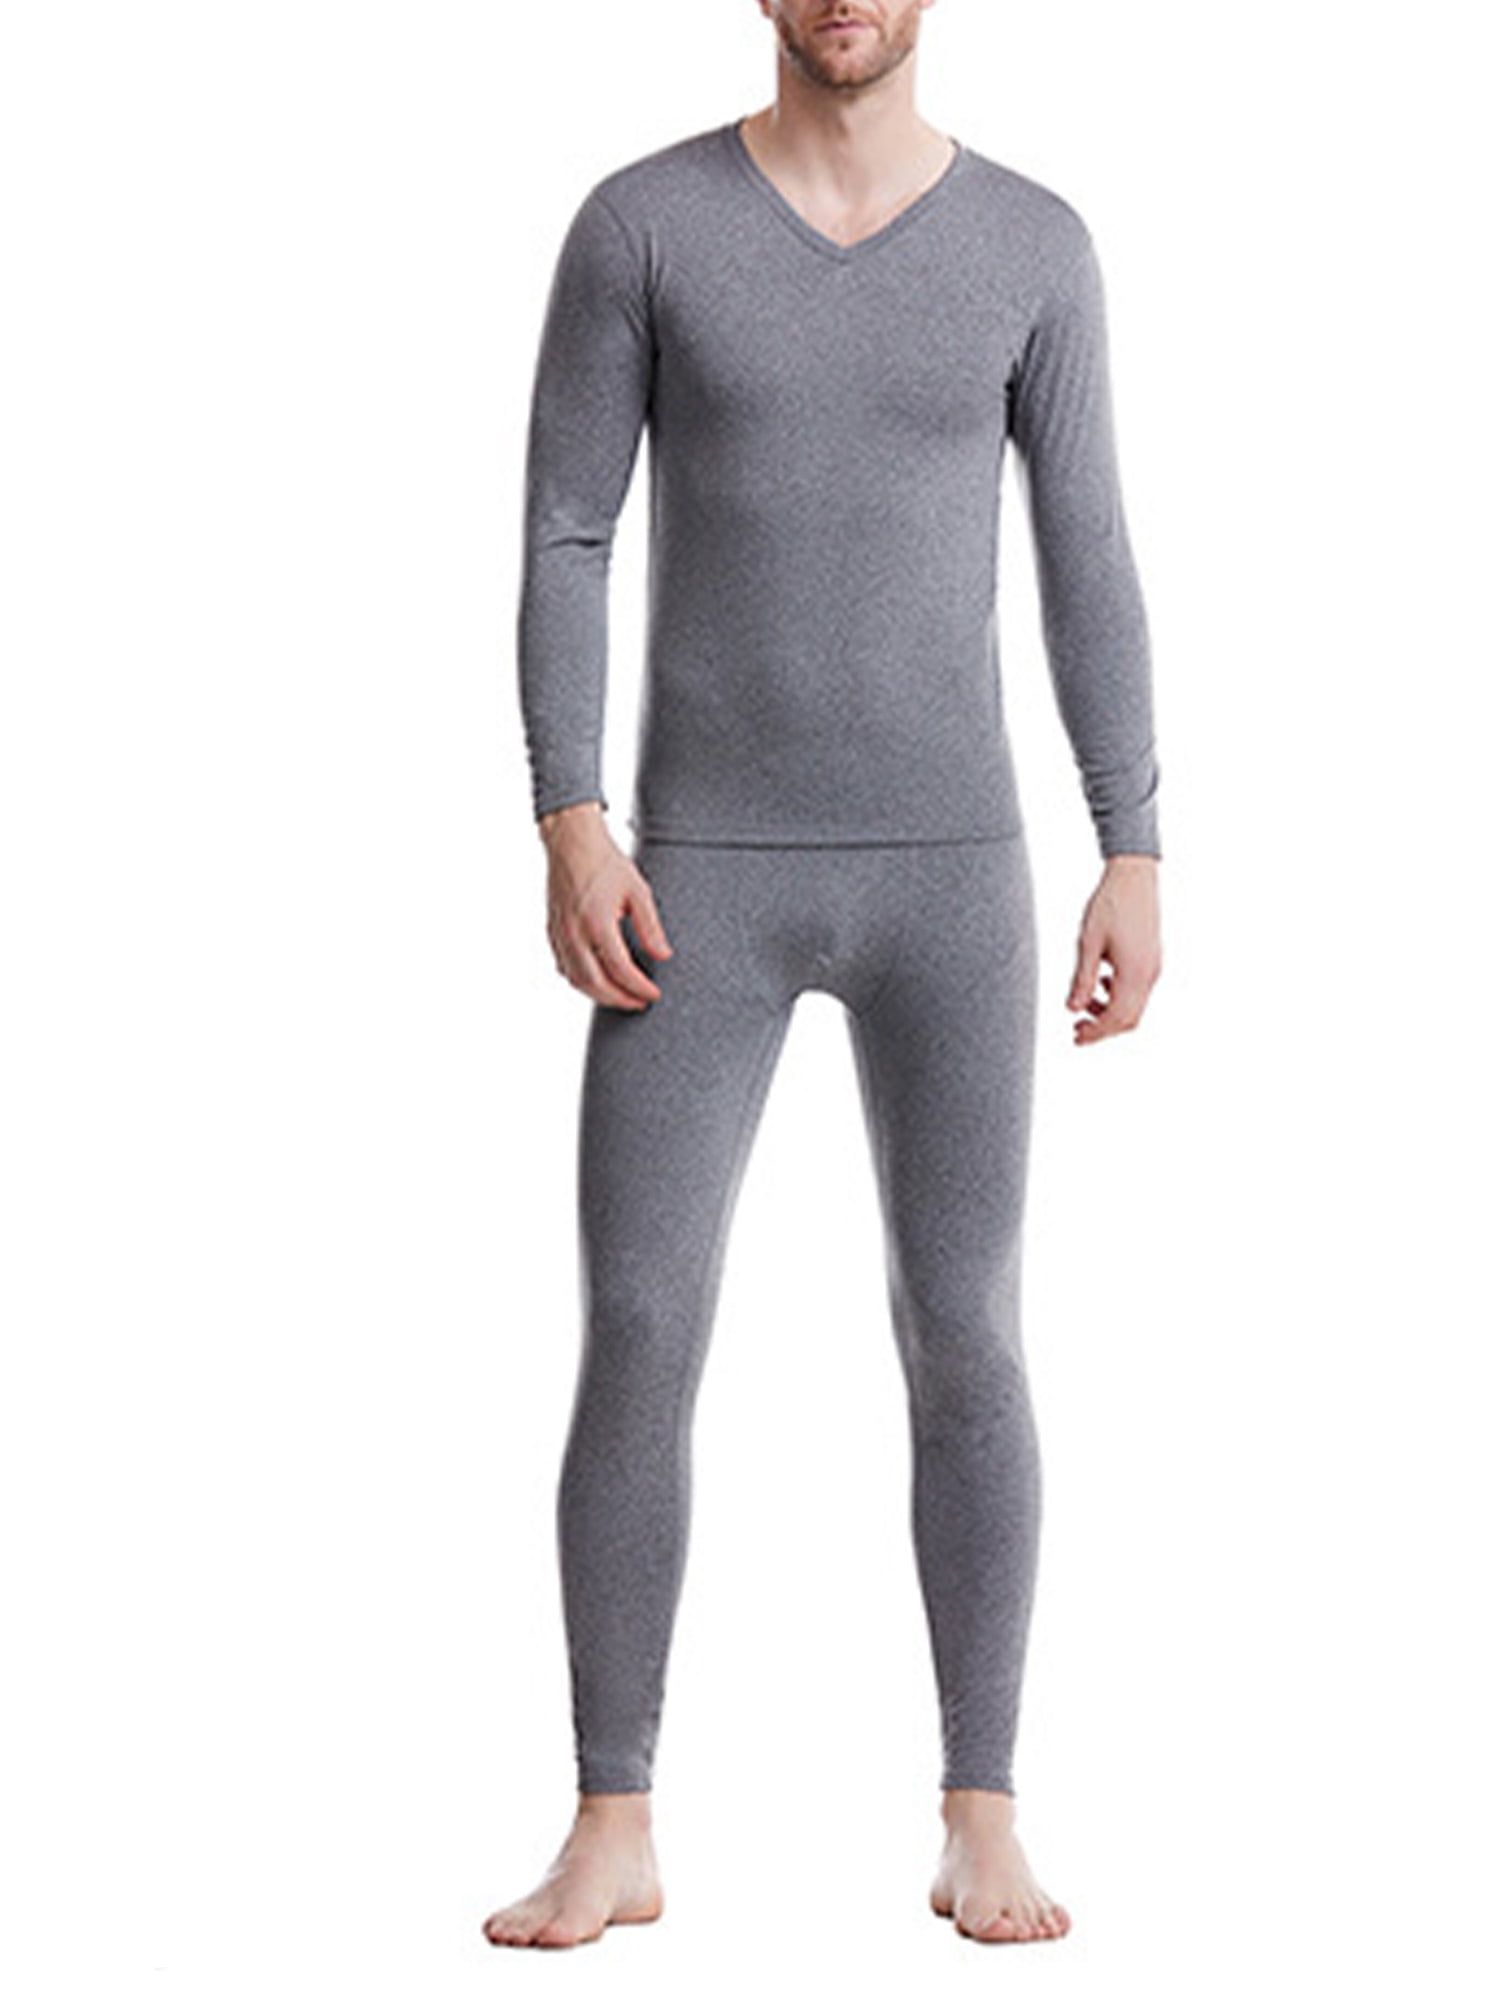 Thermal Underwear Set Long Johns Warm Top+Bottom Base Layer Ski Thermal Set 